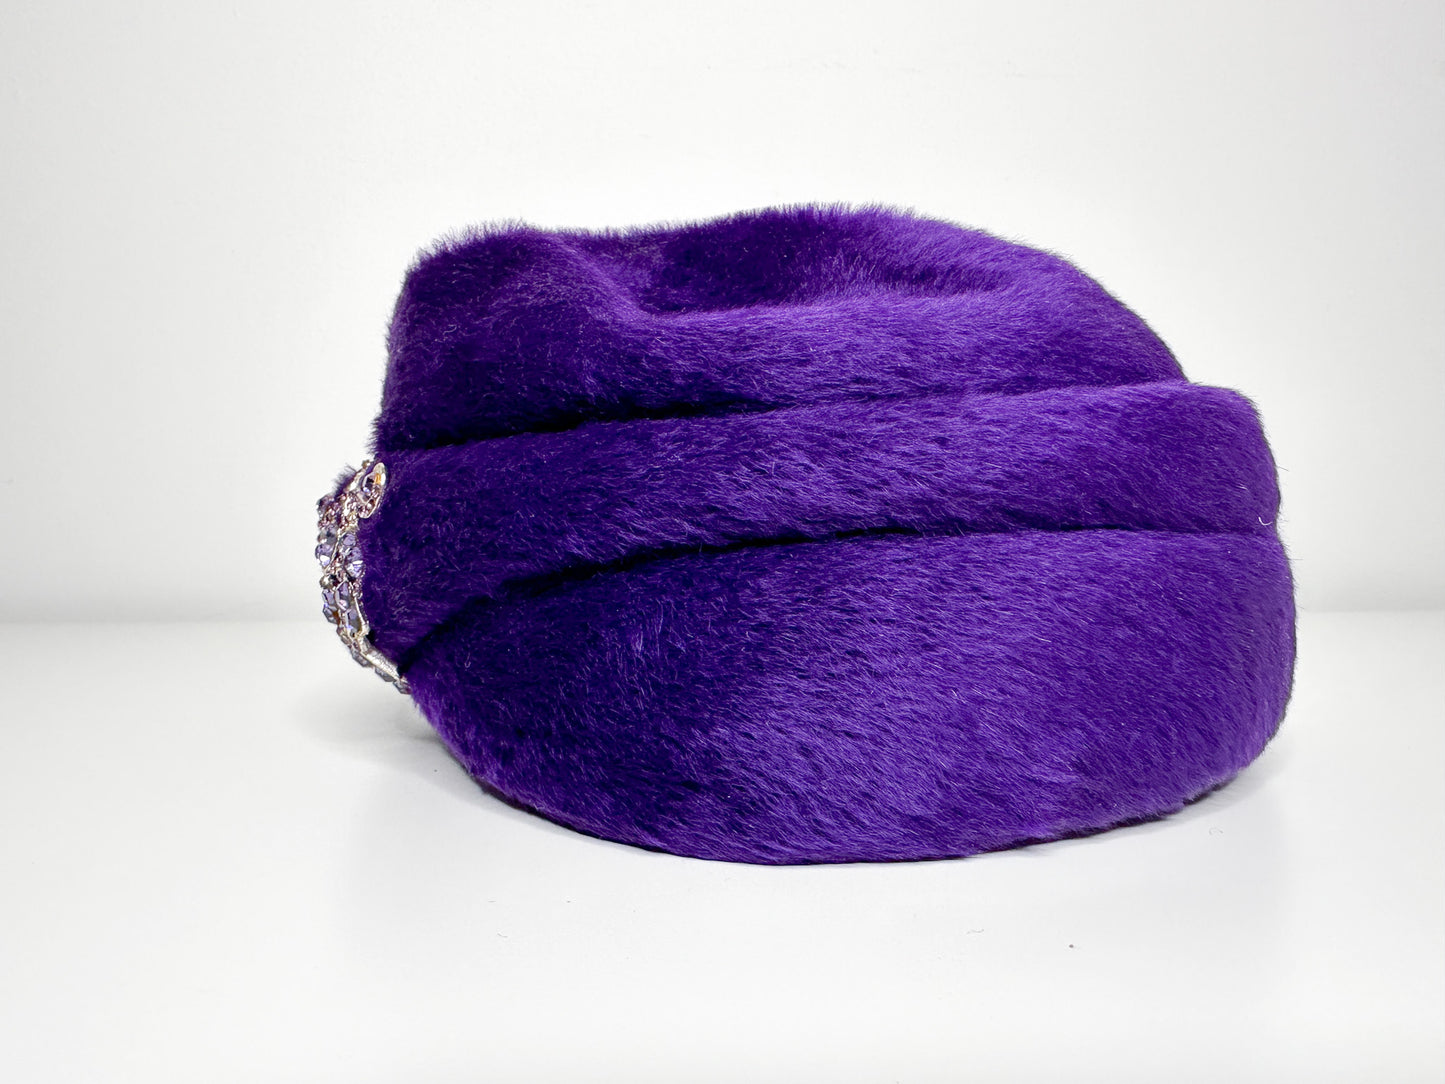 Vintage Purple Orbella Super Beaver Hat with Beaded Embellishment| Vintage Royal Purple Felt Hat | Vintage Beaded hat